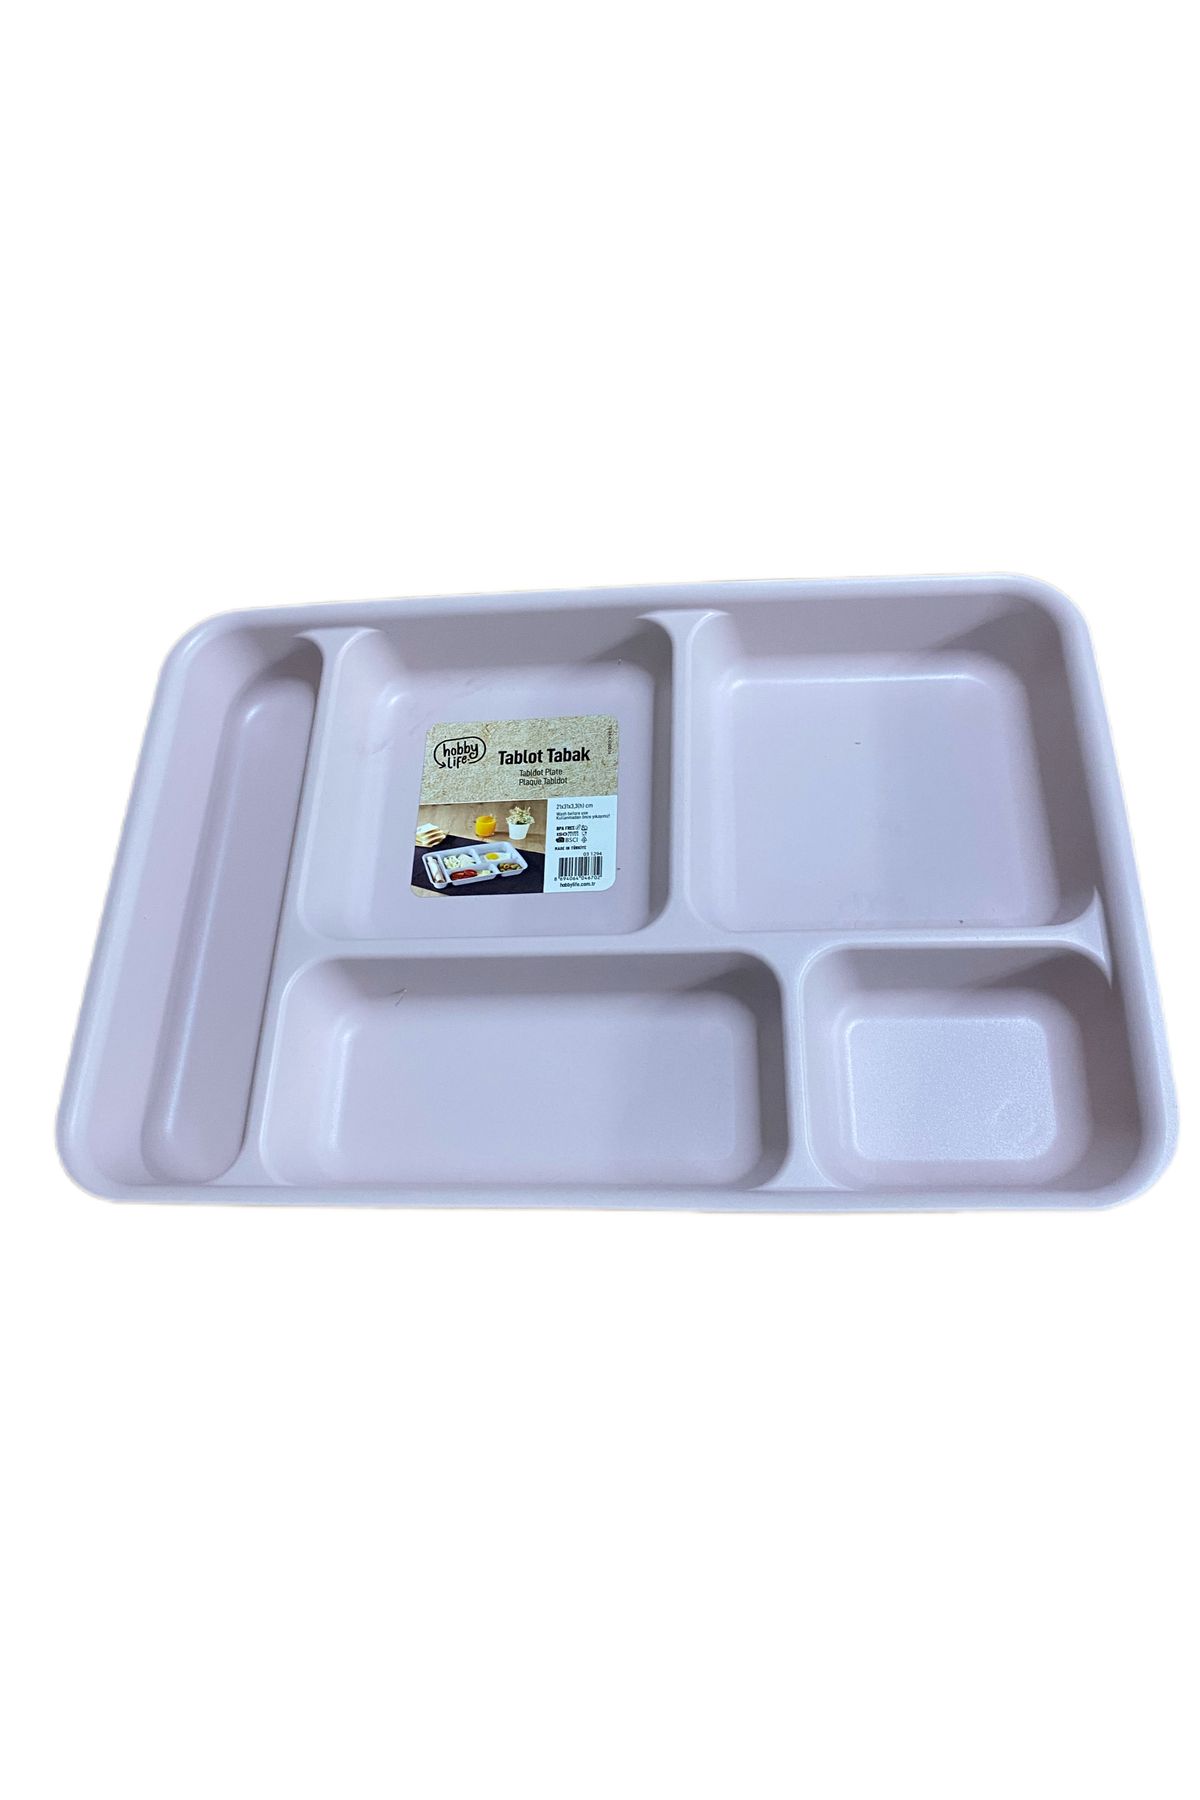 HOBBY LİFE 5 Bölmeli Plastik Tabldot Kahvaltı Yemek Piknik Servis Tabağı Pembe 21x31x3,3h Cm Hh